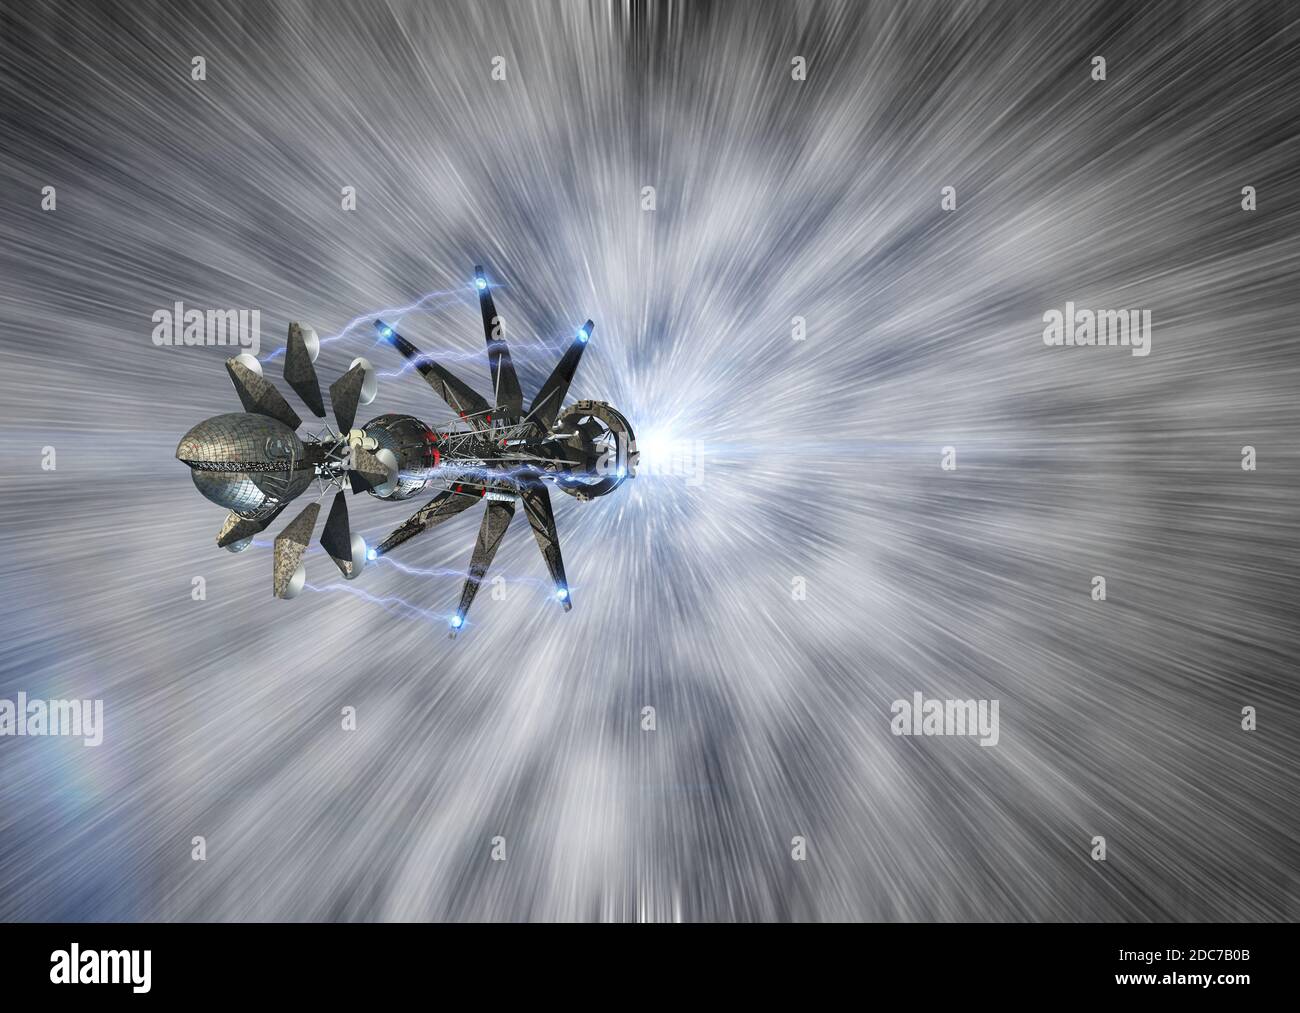 Illustrazione 3D di una navicella spaziale che raggiunge una velocità leggera, per viaggi interstellari futuristici o sfondi di videogiochi Foto Stock